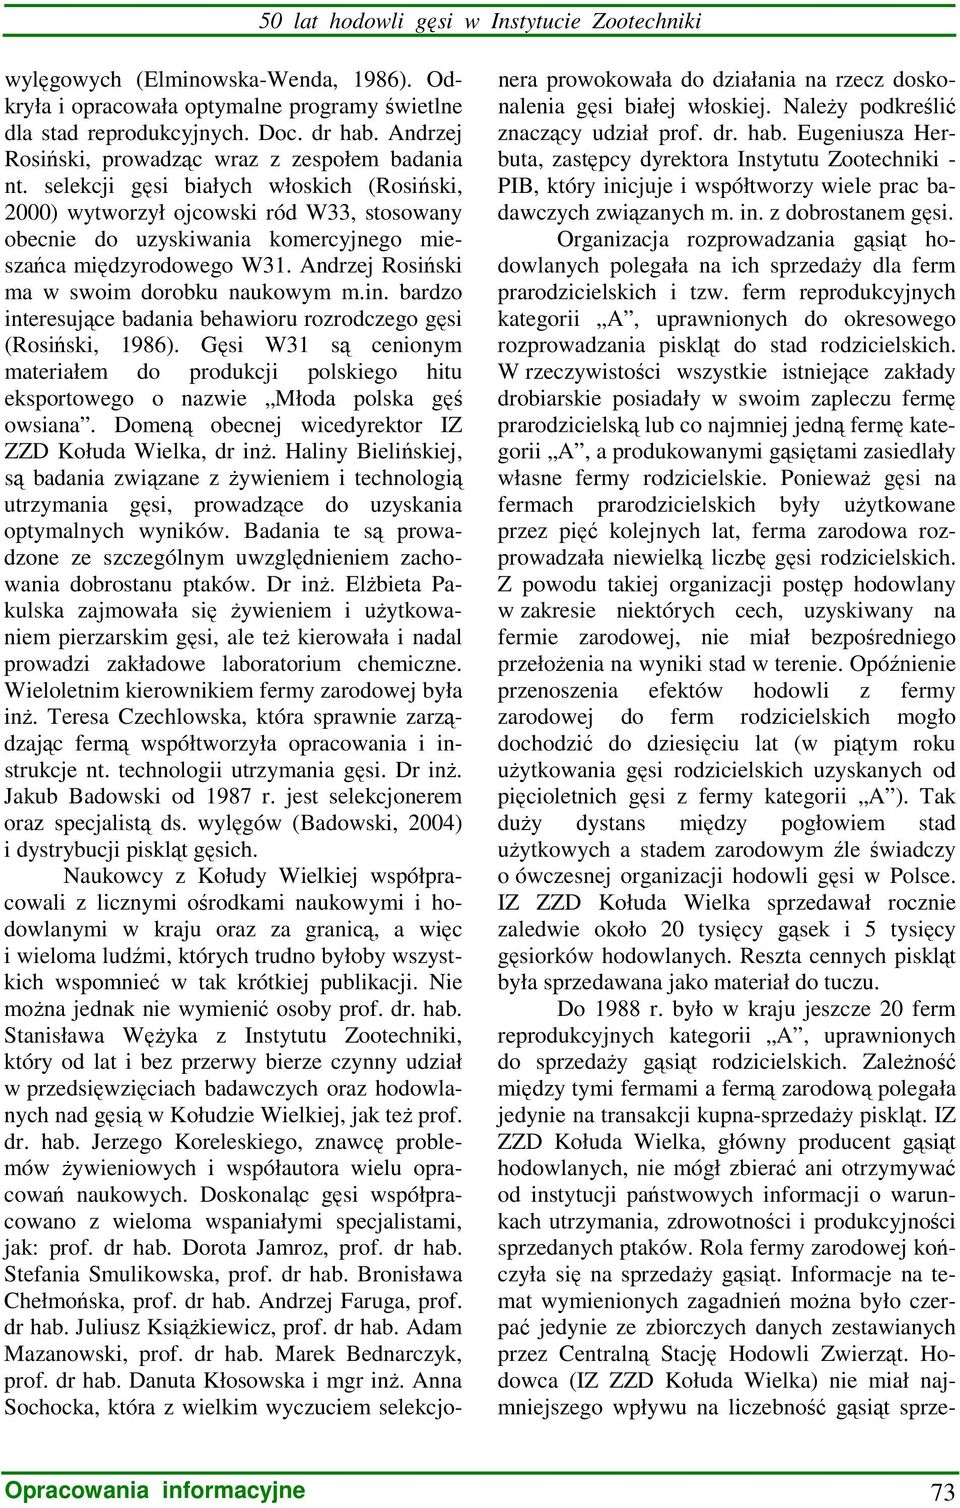 selekcji gęsi białych włoskich (Rosiński, 2000) wytworzył ojcowski ród W33, stosowany obecnie do uzyskiwania komercyjnego mieszańca międzyrodowego W31. Andrzej Rosiński ma w swoim dorobku naukowym m.